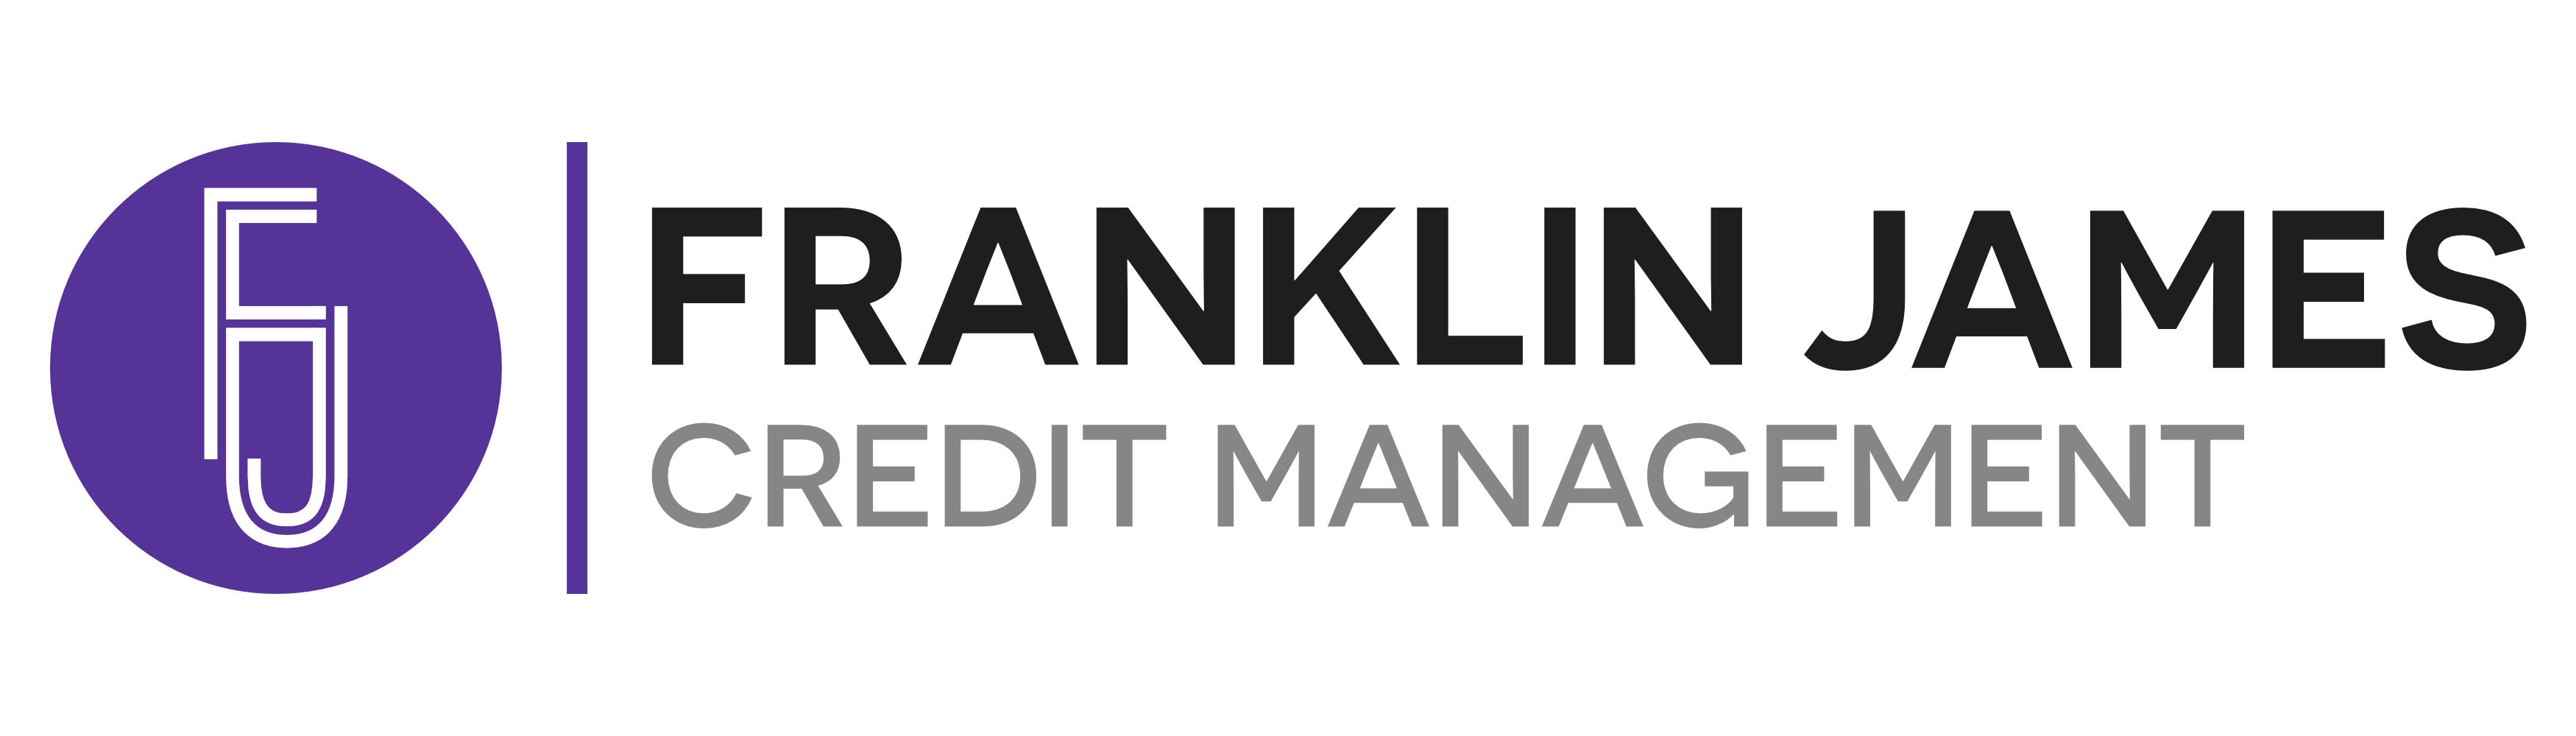 Franklin James Credit Management Limited